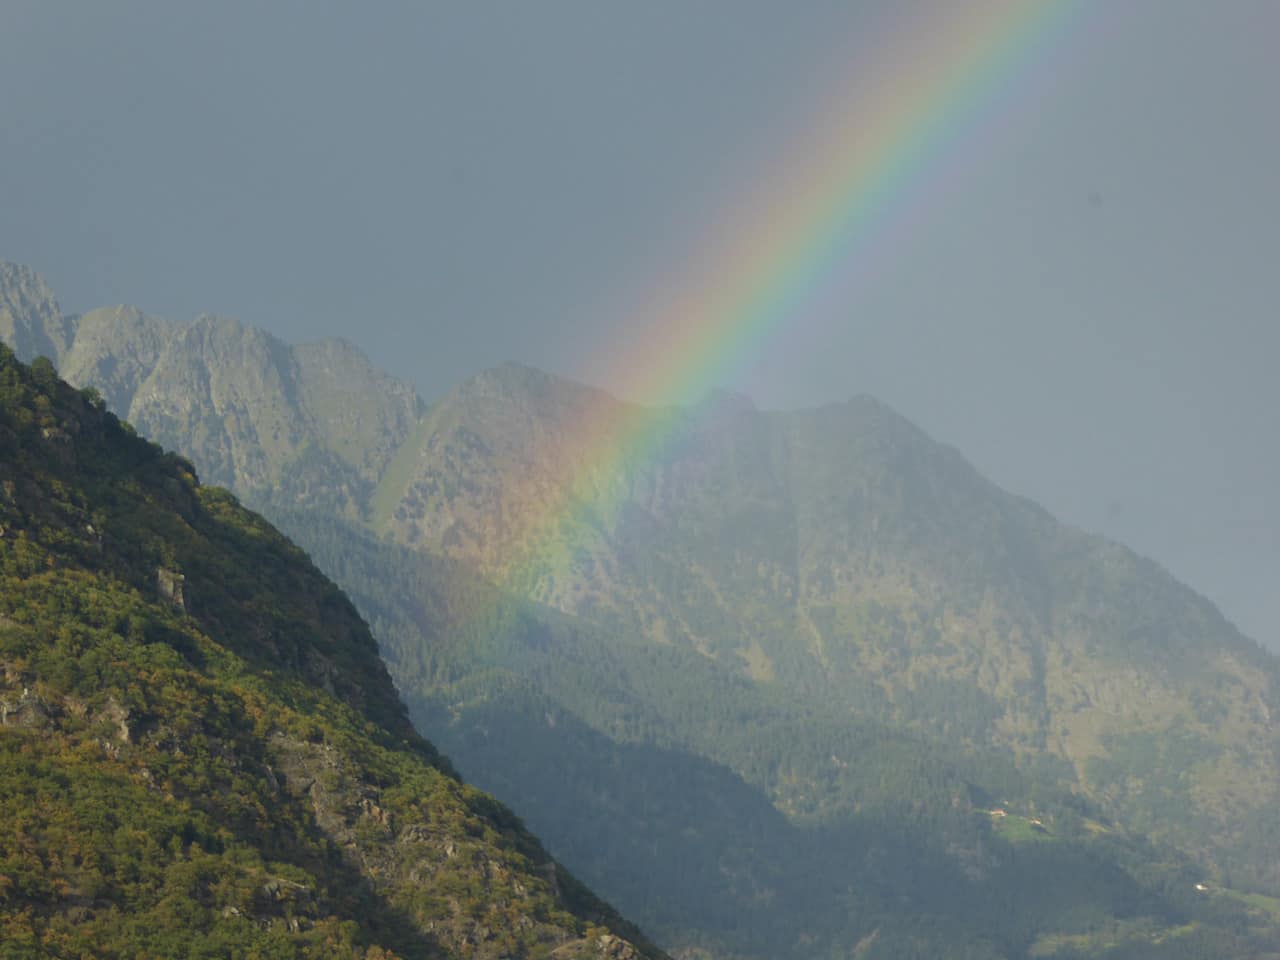 Regenbogen auf der Fahrt nach Meran